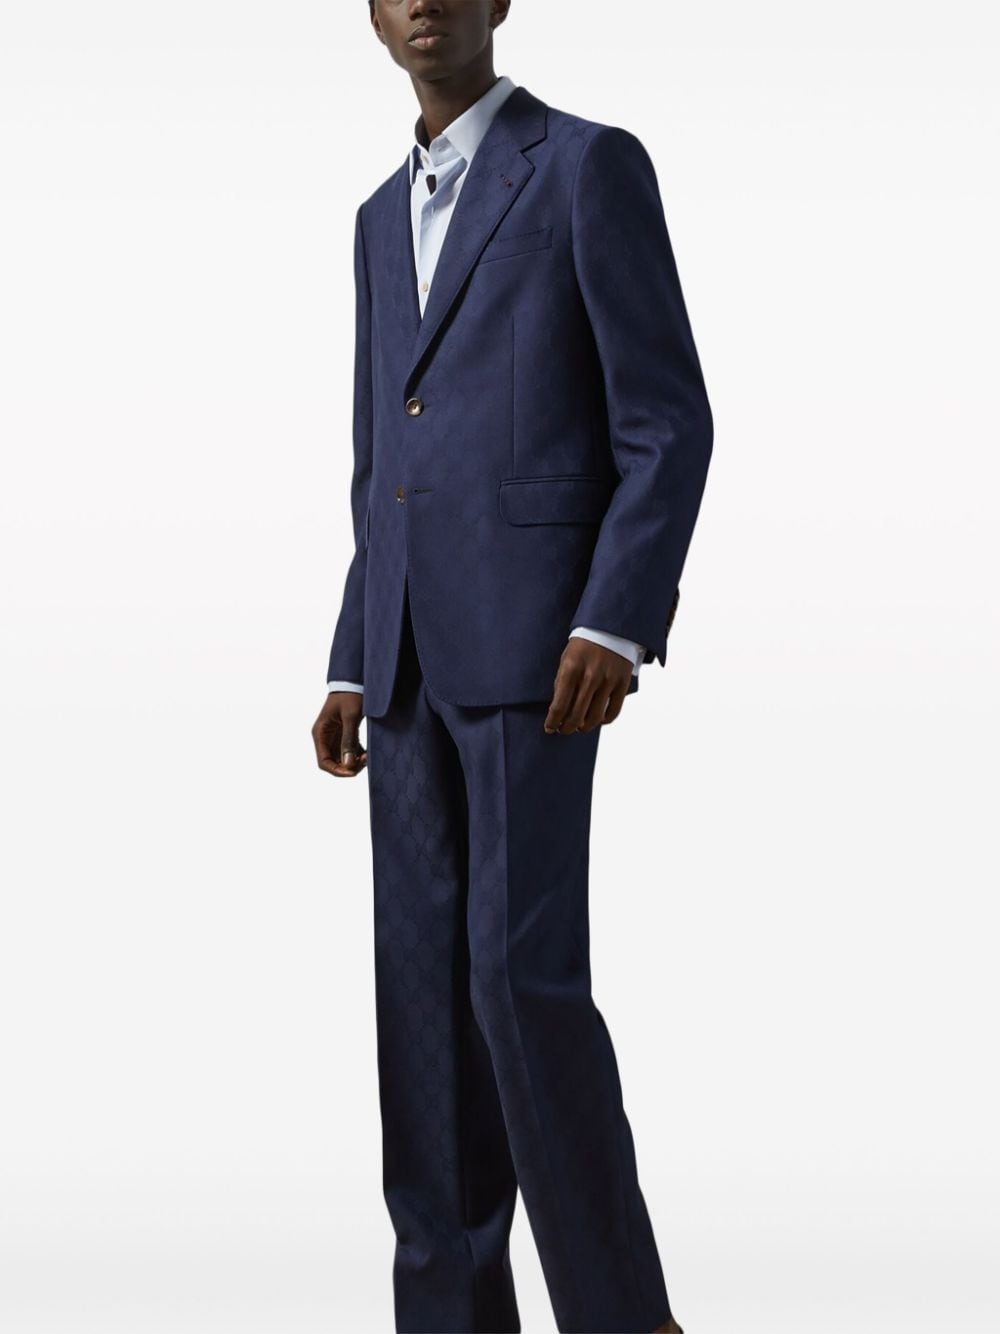 GG Damier-jacquard wool suit - 3